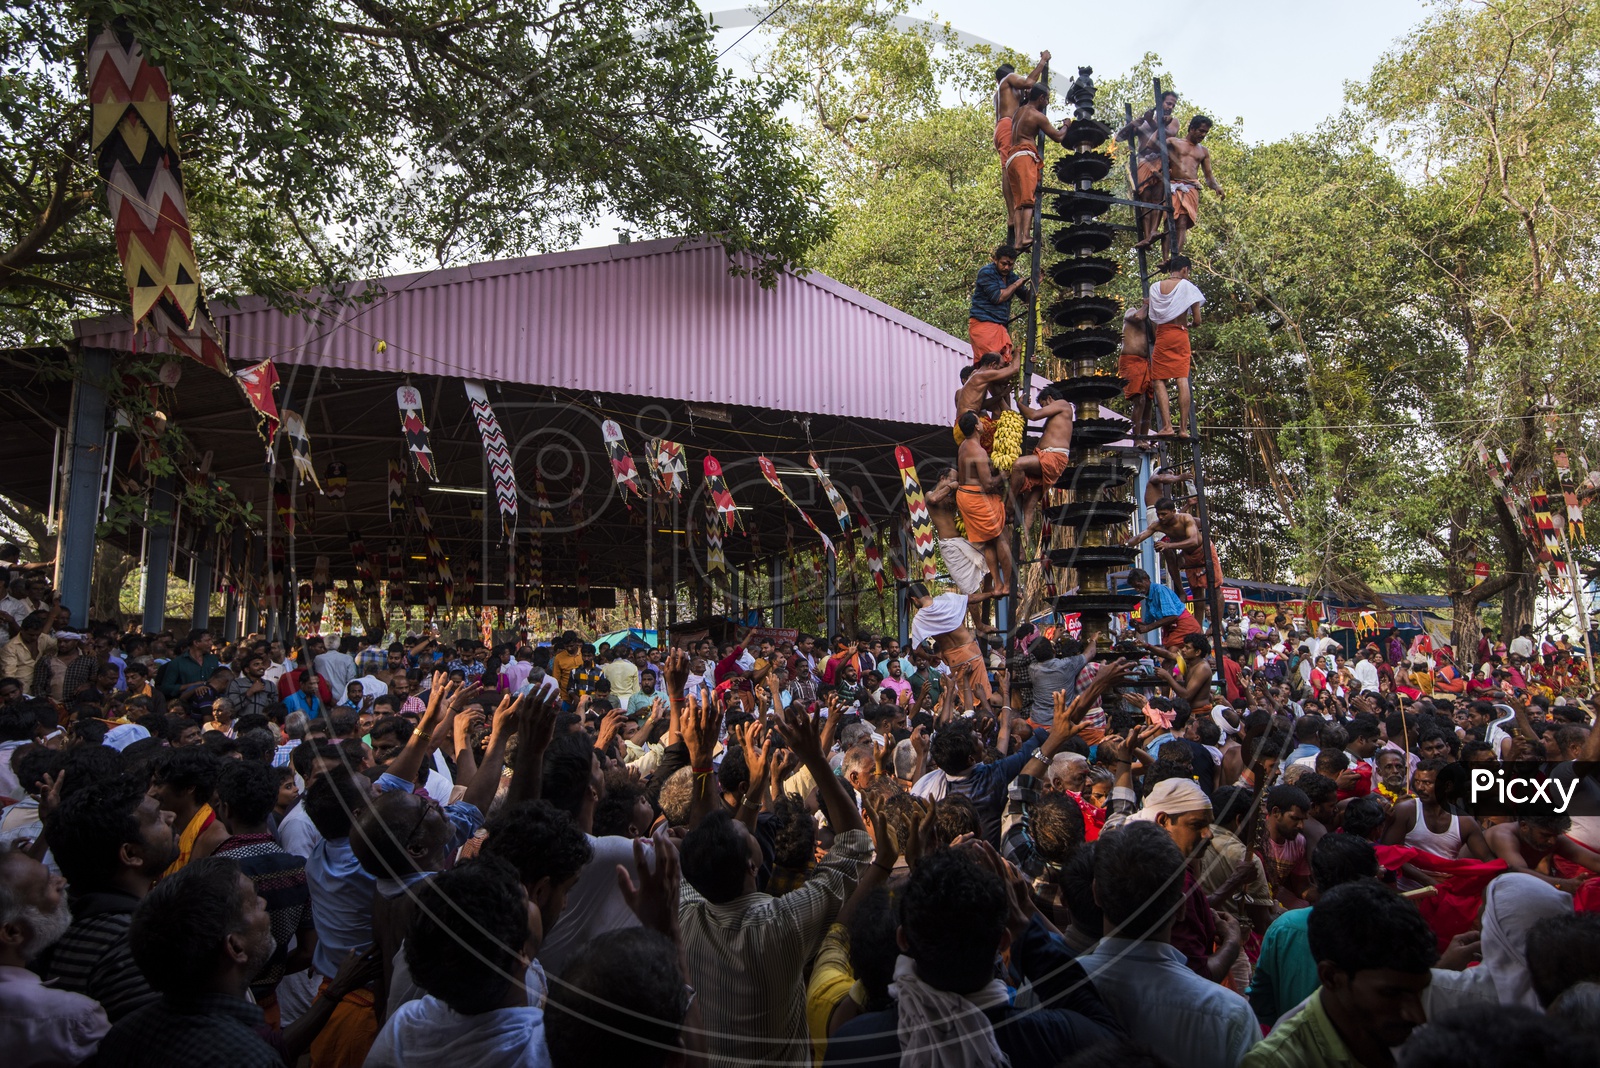 Kodungallur Bharani Festival